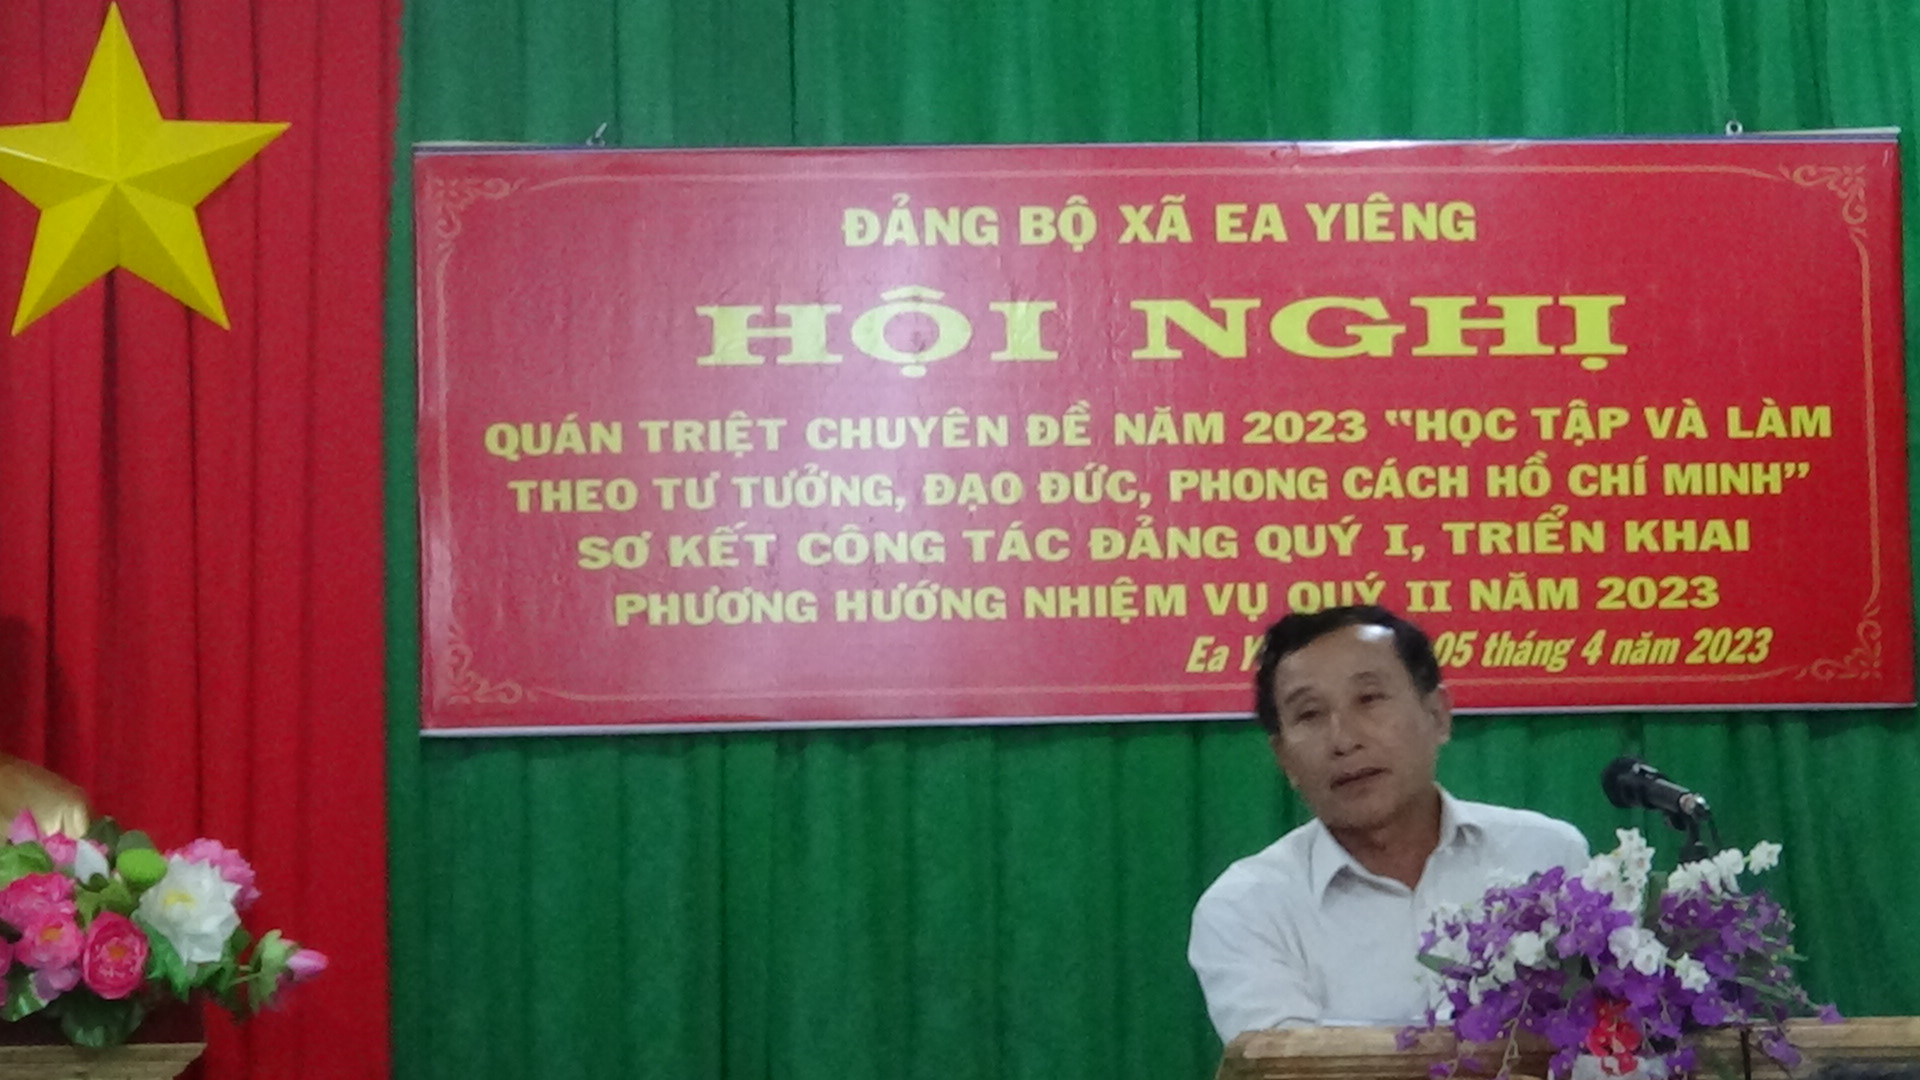 Đảng ủy tổ chức hội nghị Quán triệt chuyên đề học tập và làm theo tư tưởng đạo đức phong cách Hồ Chí Minh và sơ kết công tác quý I và triển khai phương hướng, nhiệm vụ Quý II năm 2023